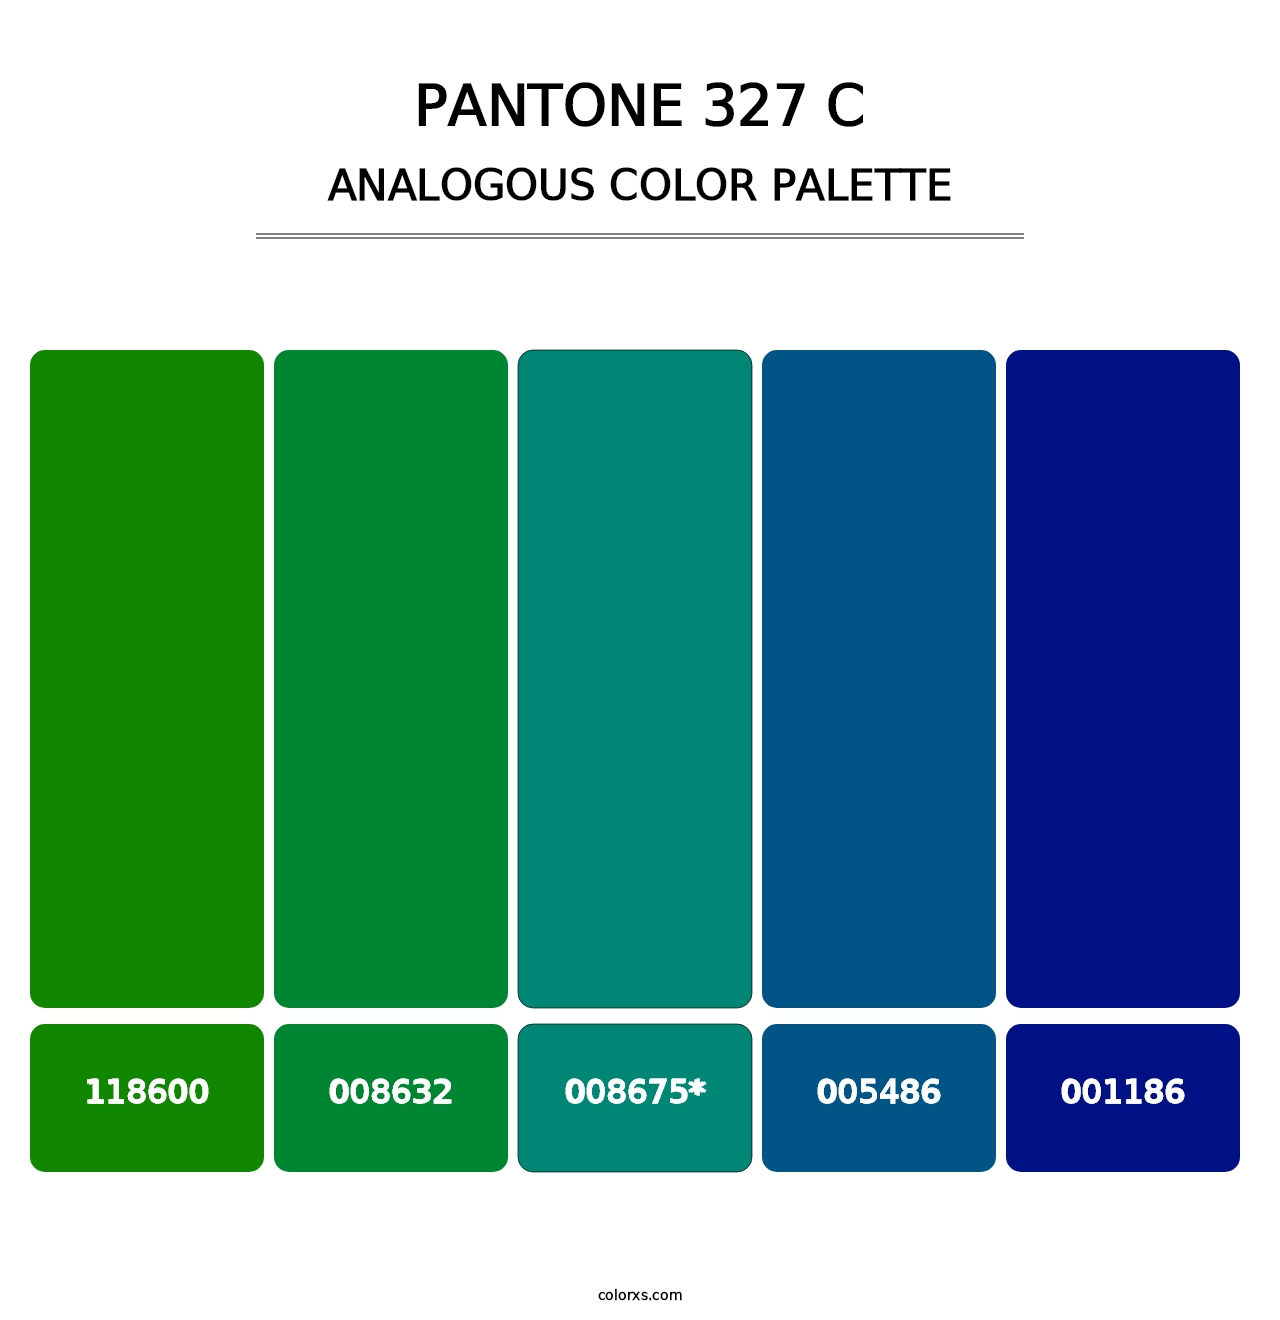 PANTONE 327 C - Analogous Color Palette